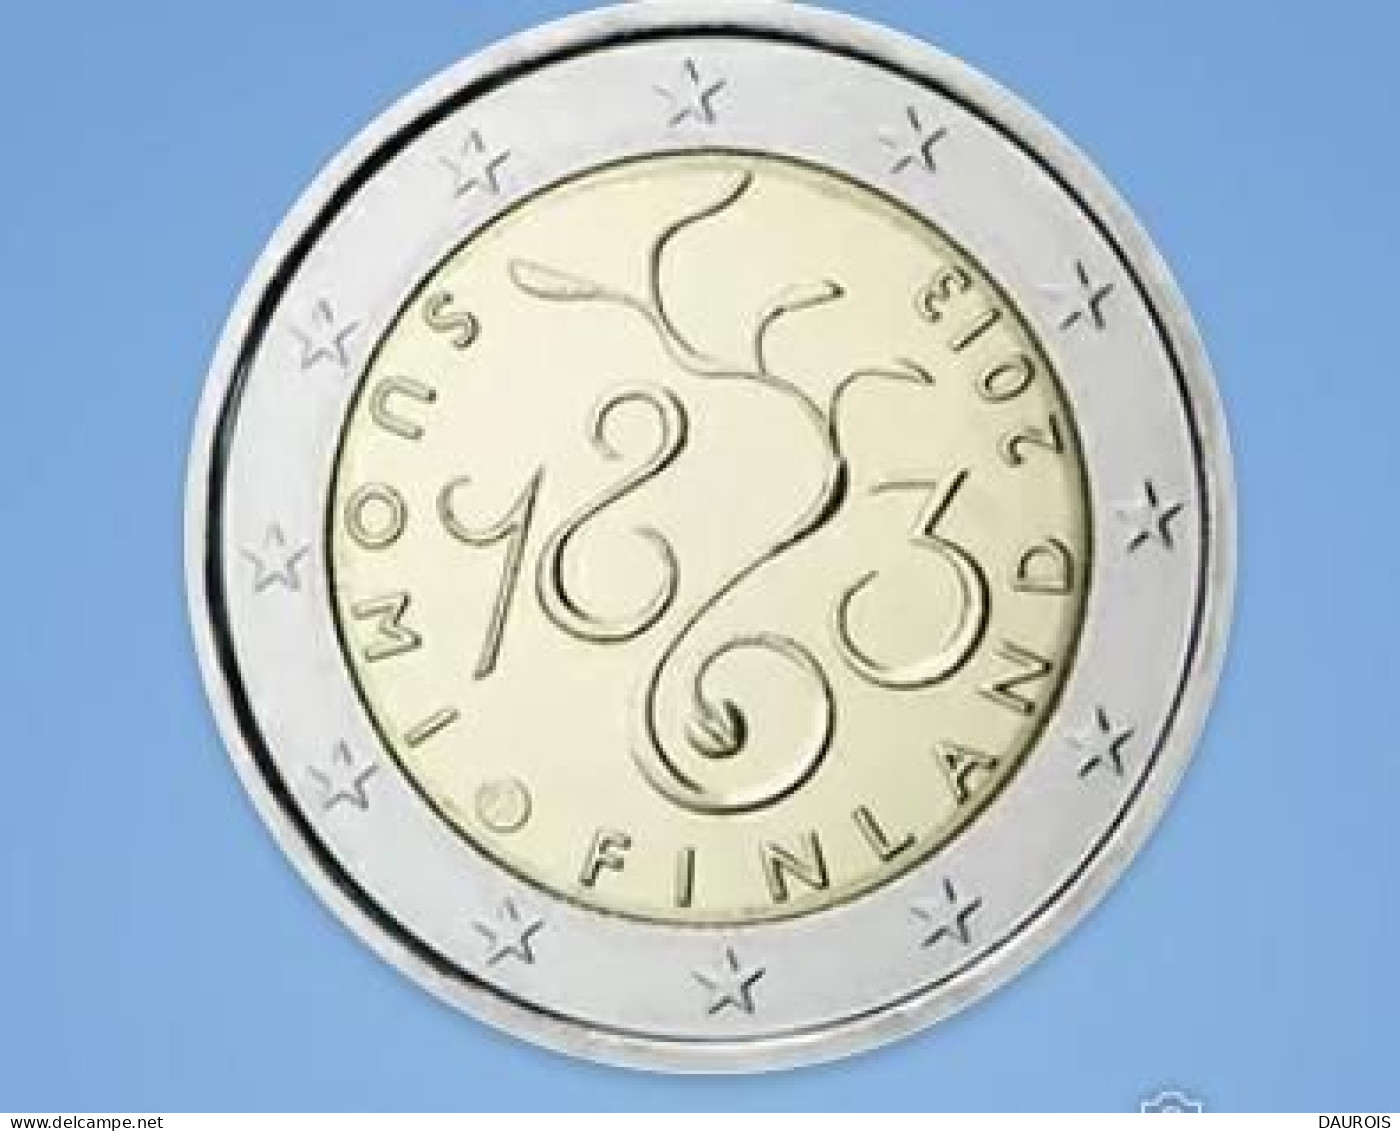 Série complète 2013 - 20 pièces 2 euro commémoratives